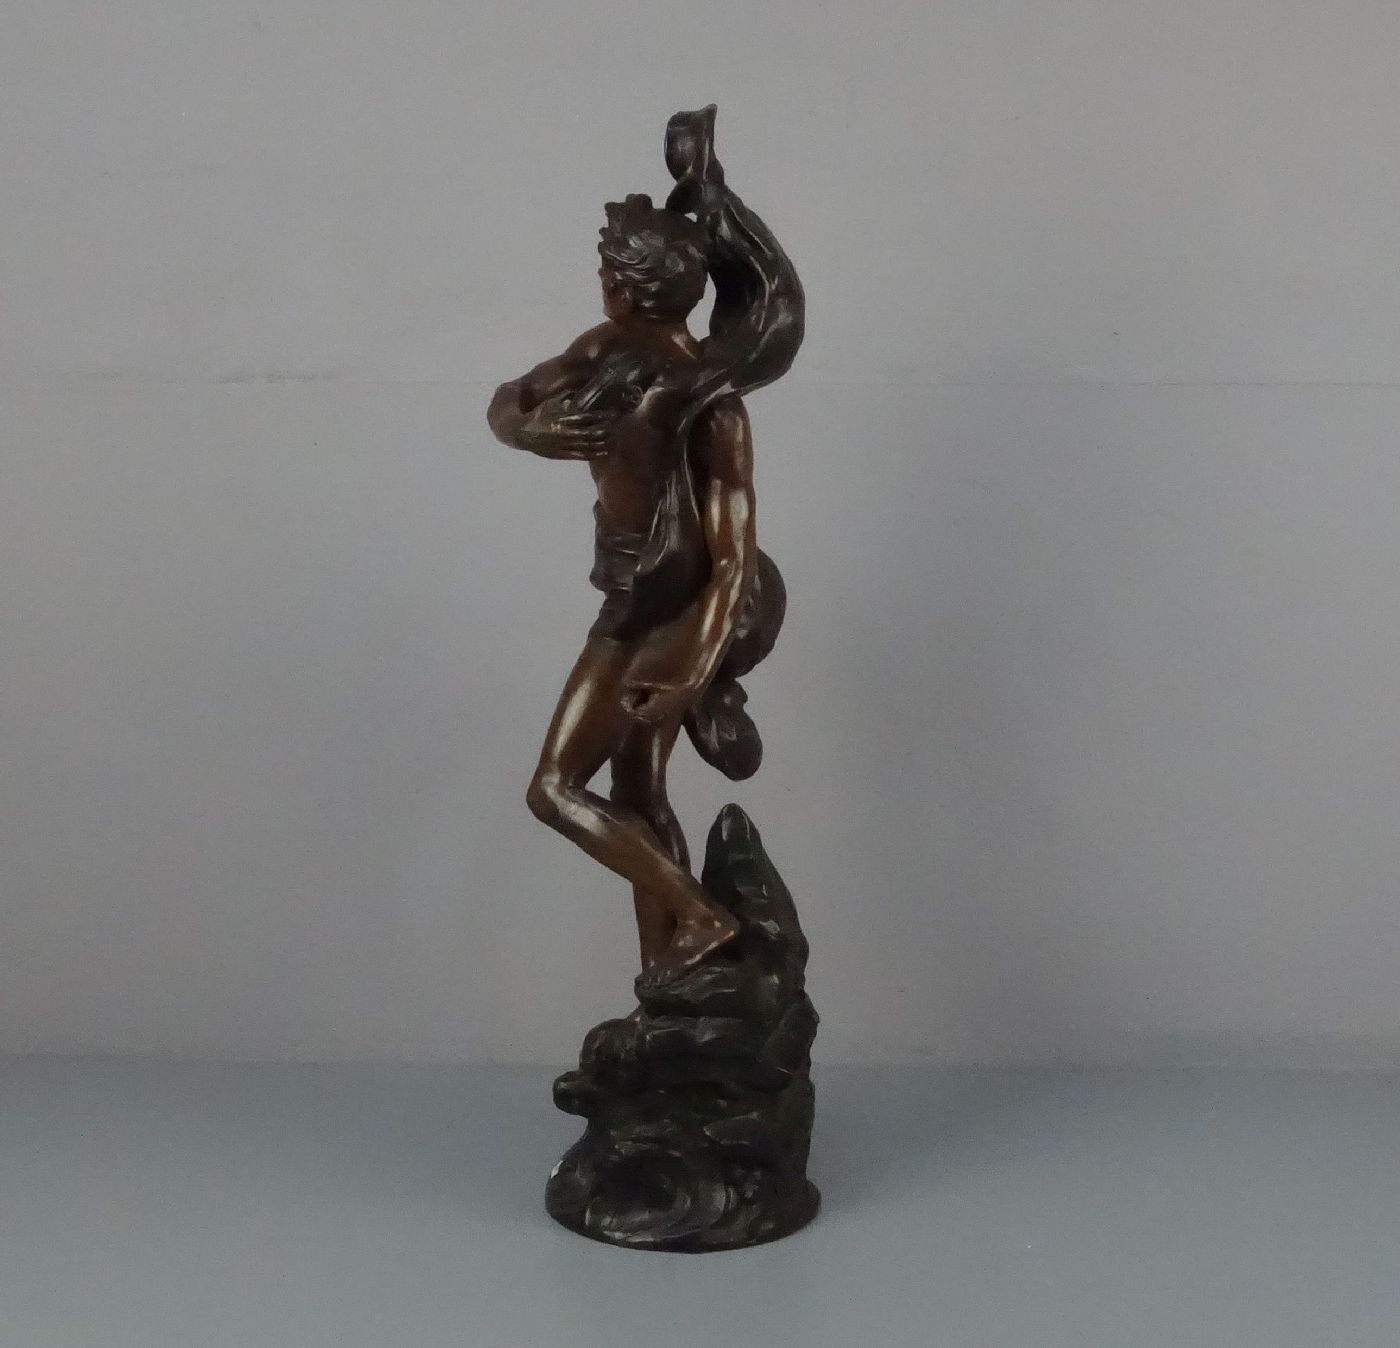 BRUCHON, ÉMILE (französischer Bildhauer, tätig um 1880 bis 1910), Skulptur / sculpture: "Allegorie - Image 2 of 3